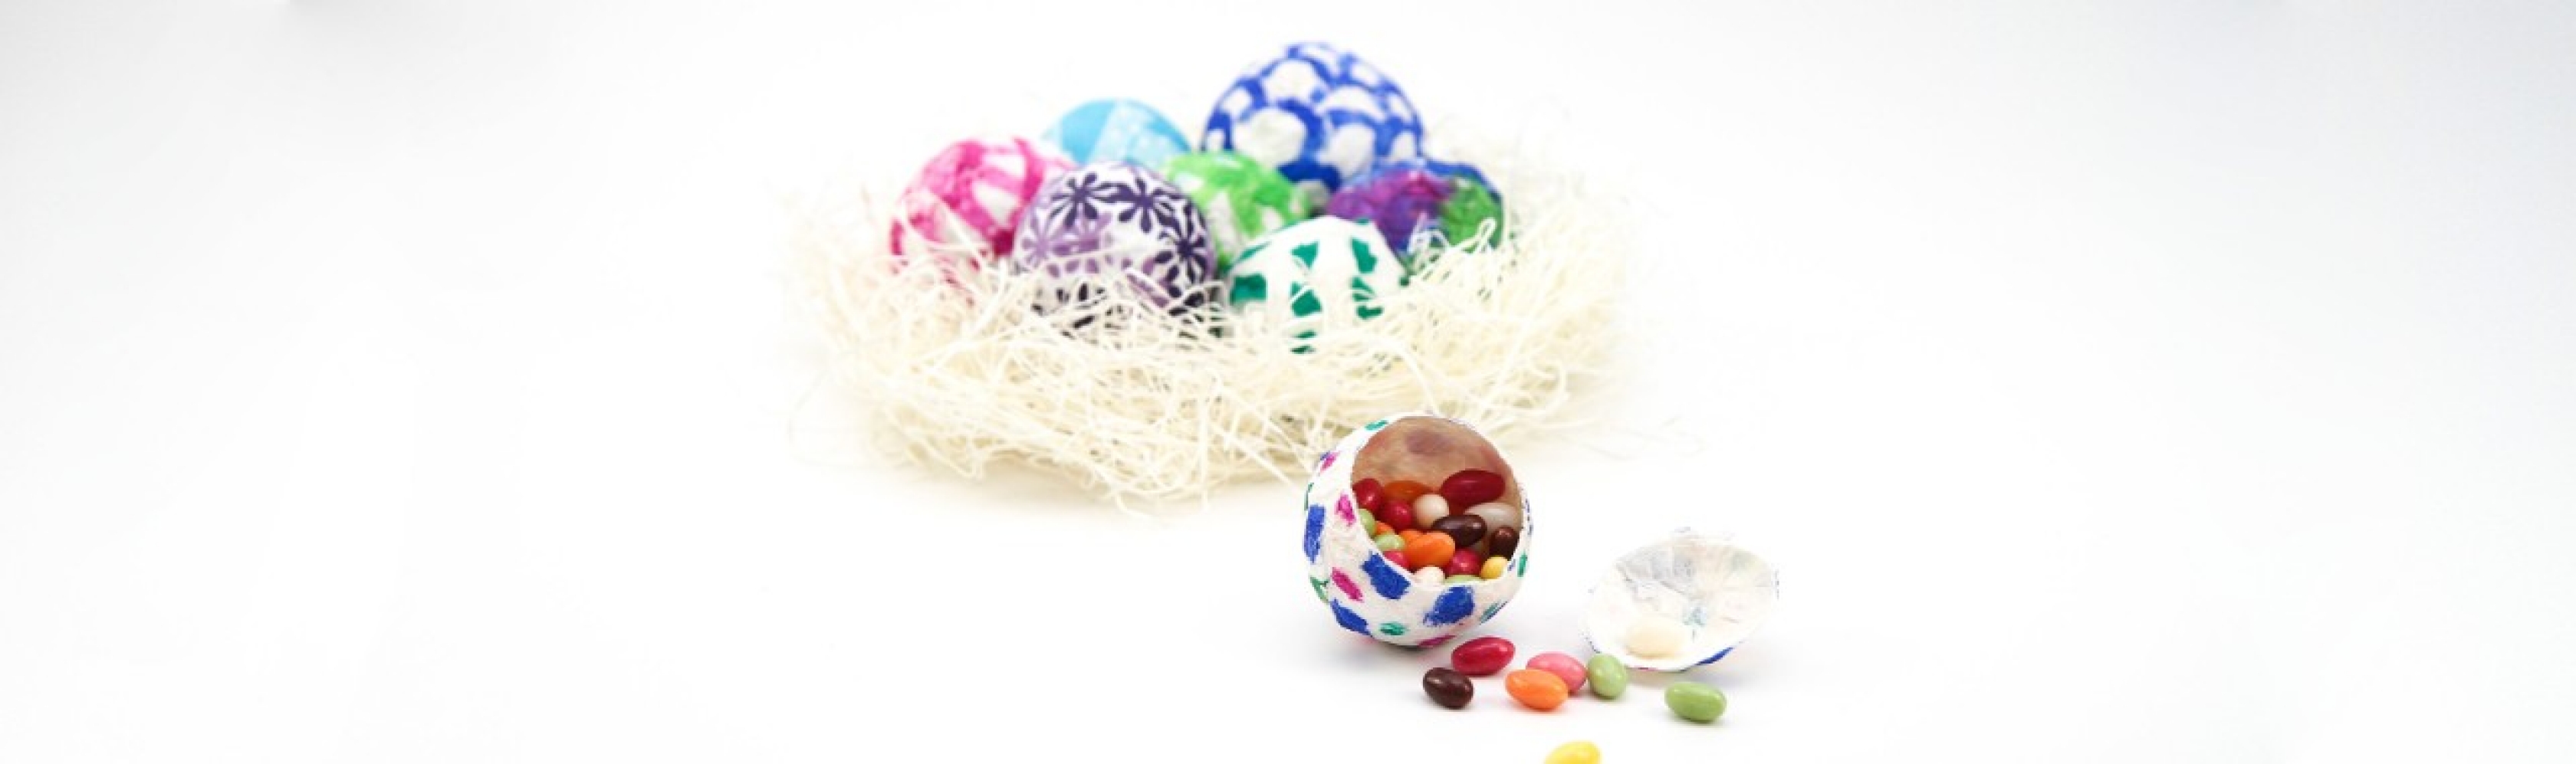 Des œufs surprise colorés dans un nid